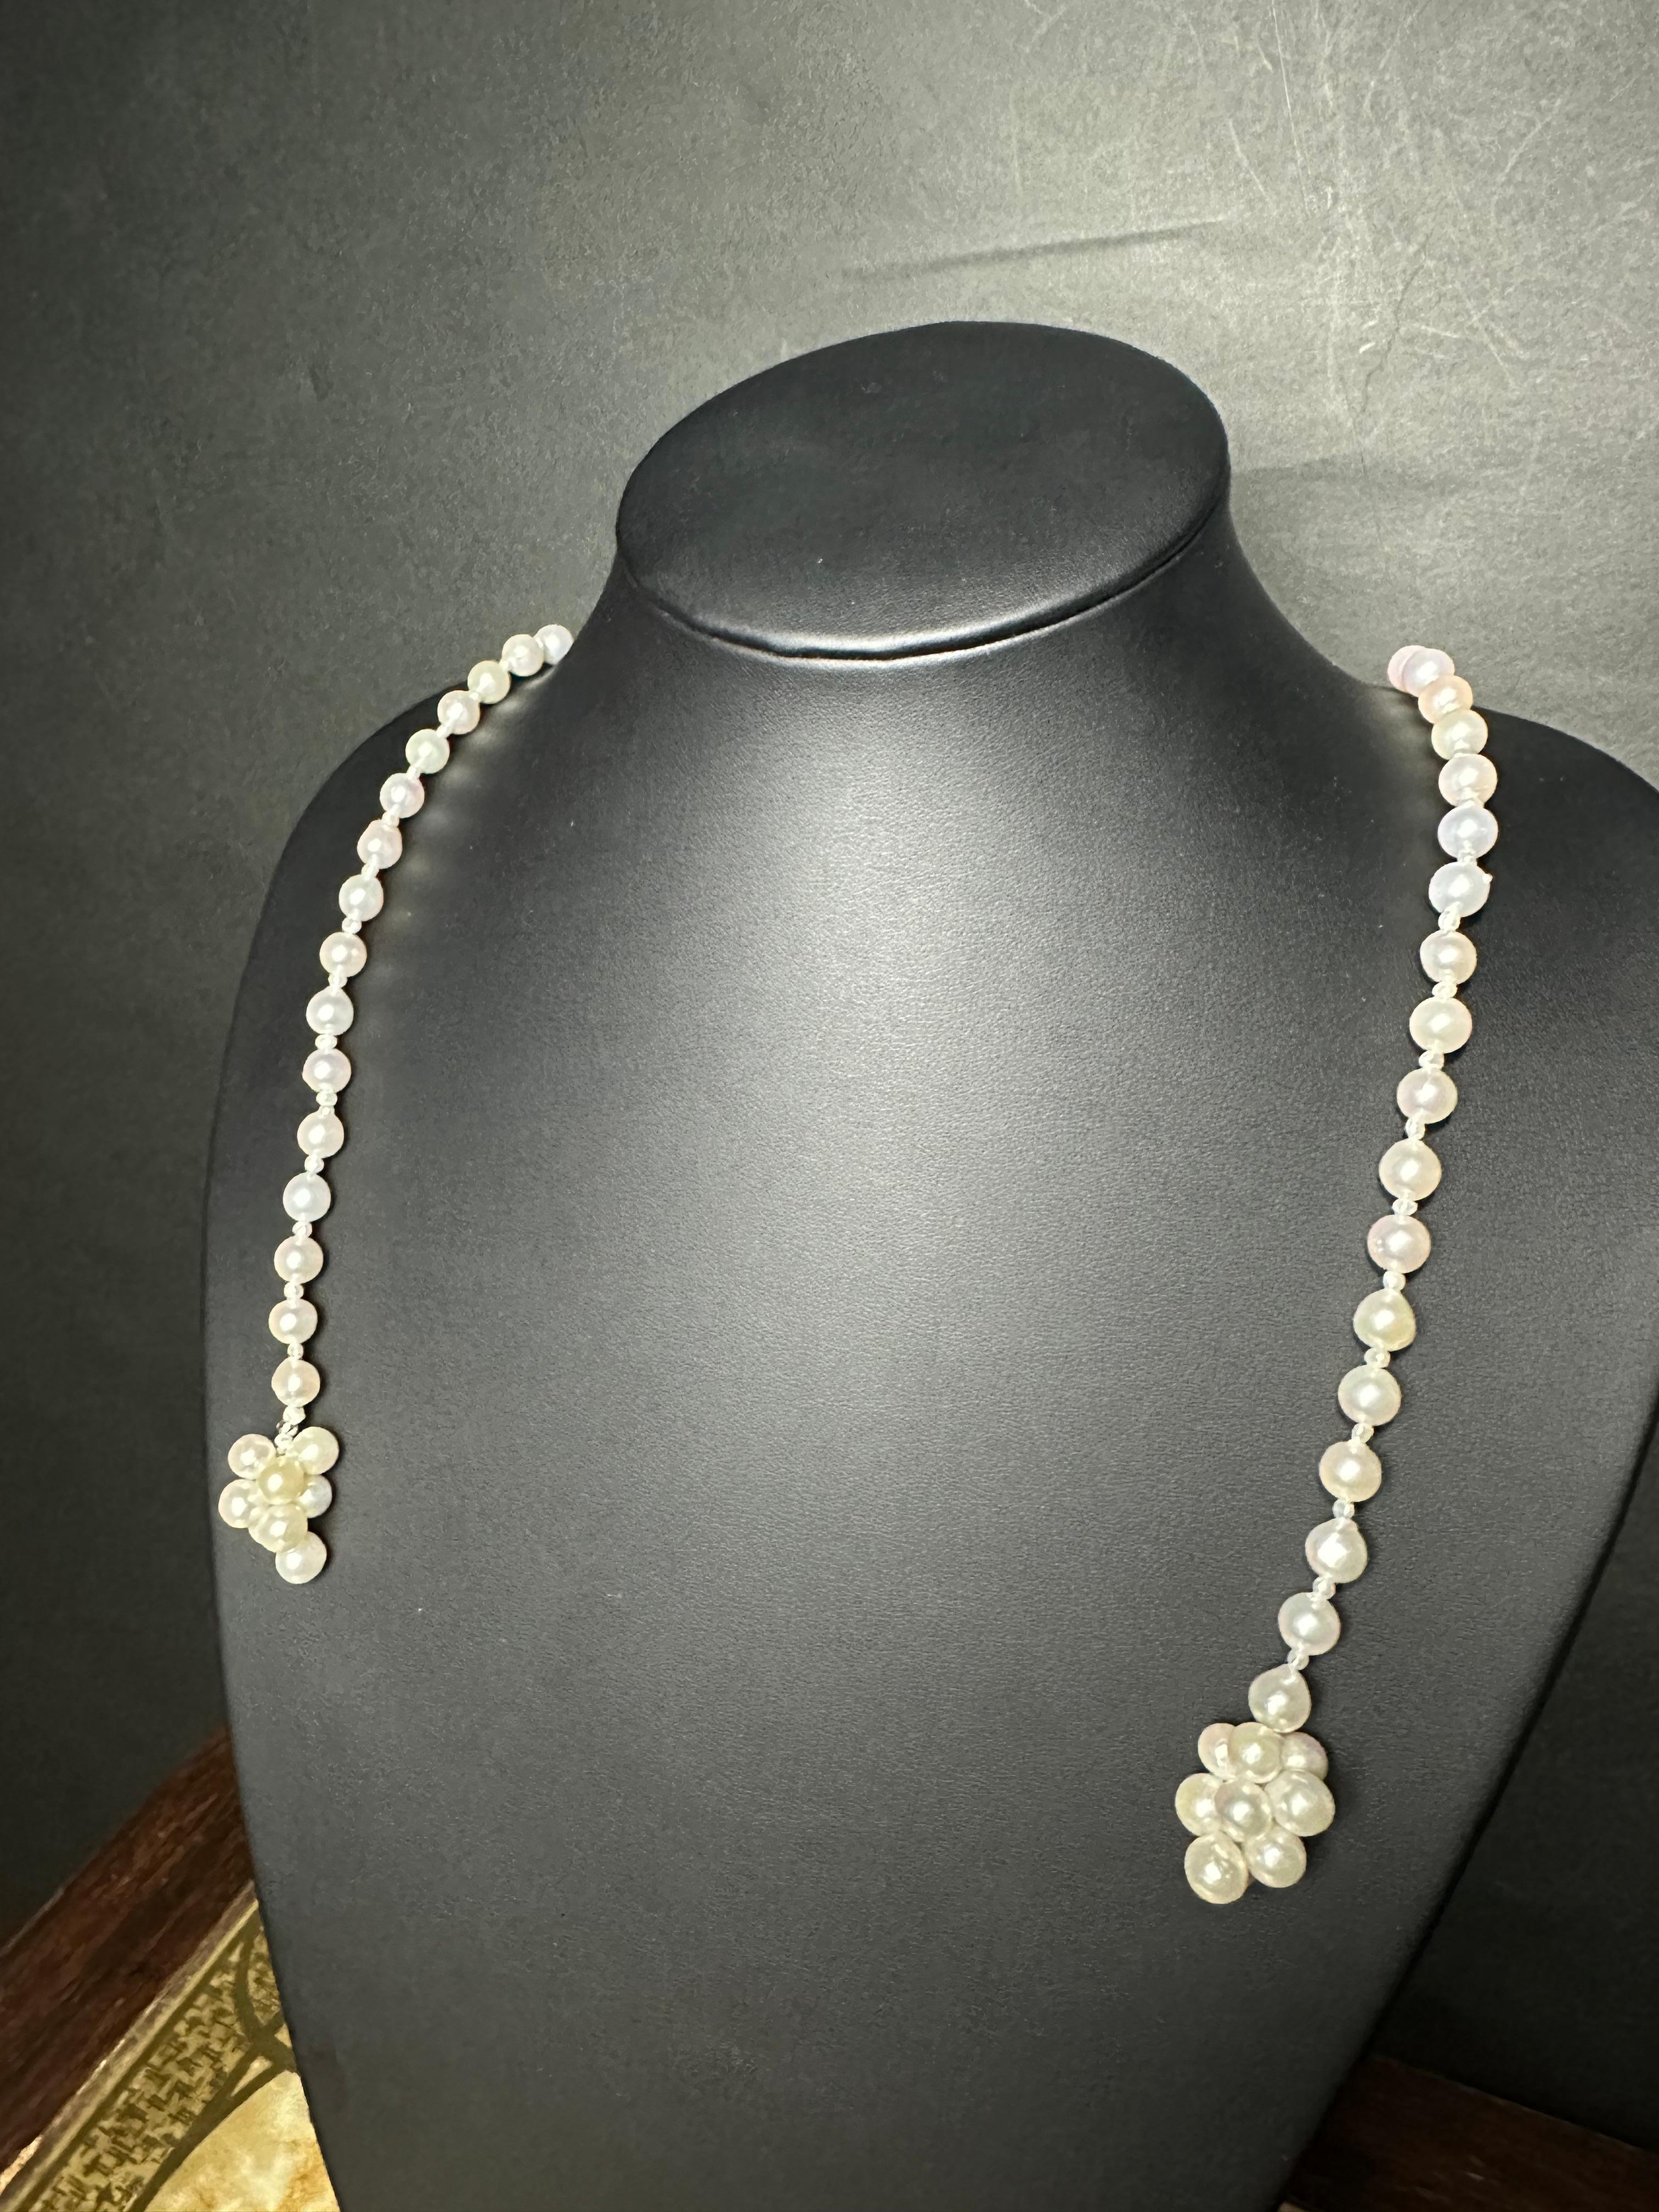 Créateur : IRIS PARURE
Ferme perlière : Ehime, Uwajima, JAPON
Caractéristiques : non coloré et non blanchi, BENI AKOYA®.
Taille de la perle : 7.0mm-7.50mm
Nombre de perles : 134

 Depuis sa création en 1953, IRIS PARURE fabrique des bijoux en perles